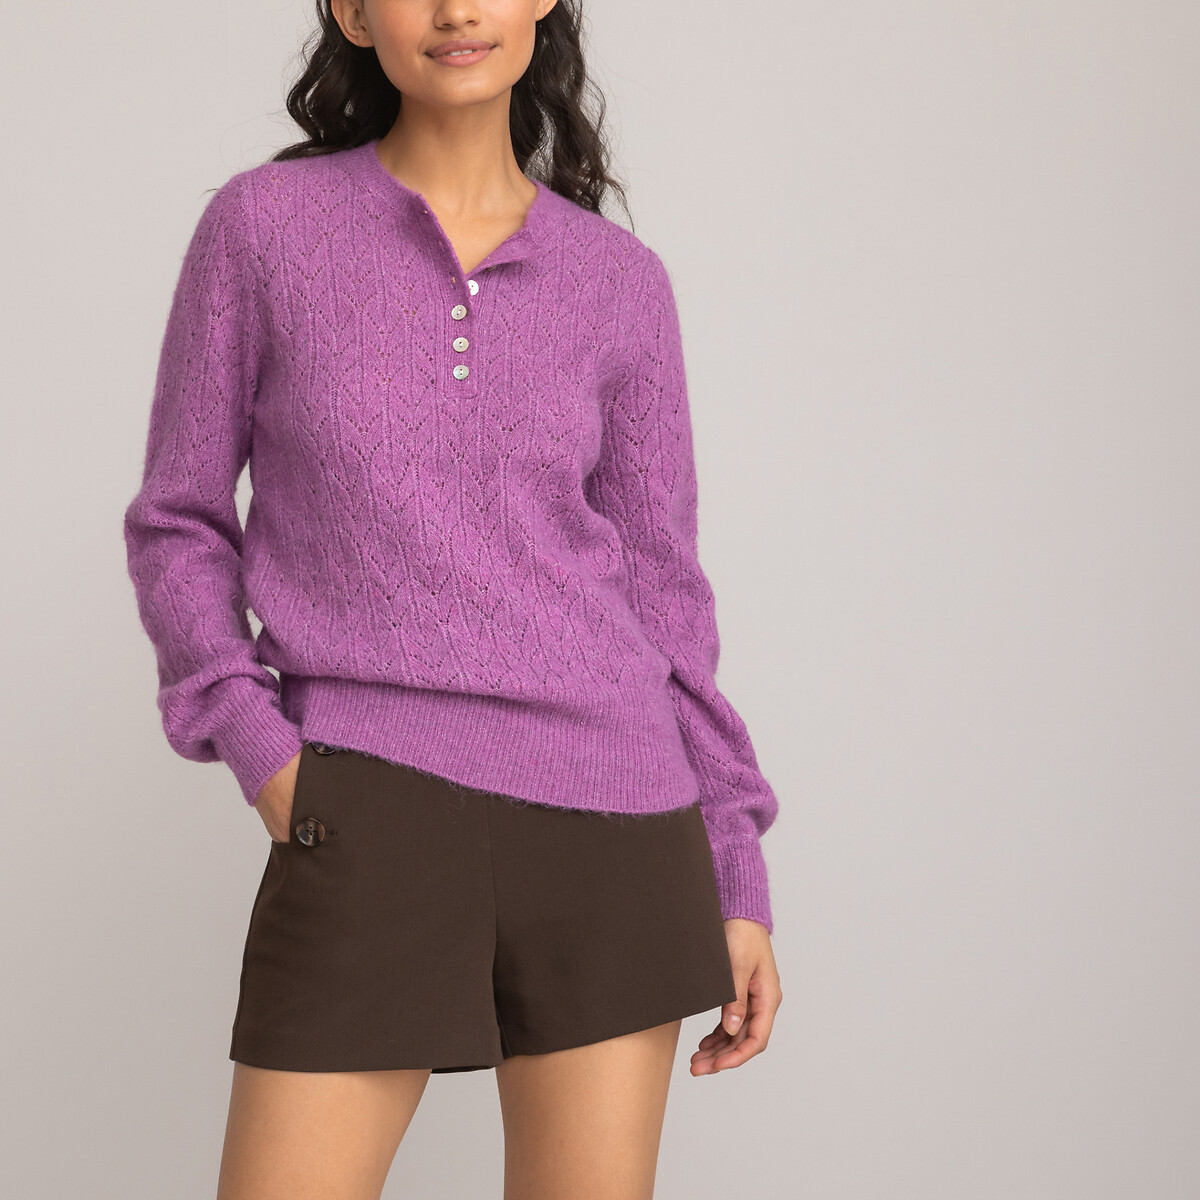 Пуловер с тунисским вырезом из трикотажа пуантель S фиолетовый пуловер с тунисским вырезом из тонкого трикотажа пуантель 46 48 fr 52 54 rus бежевый